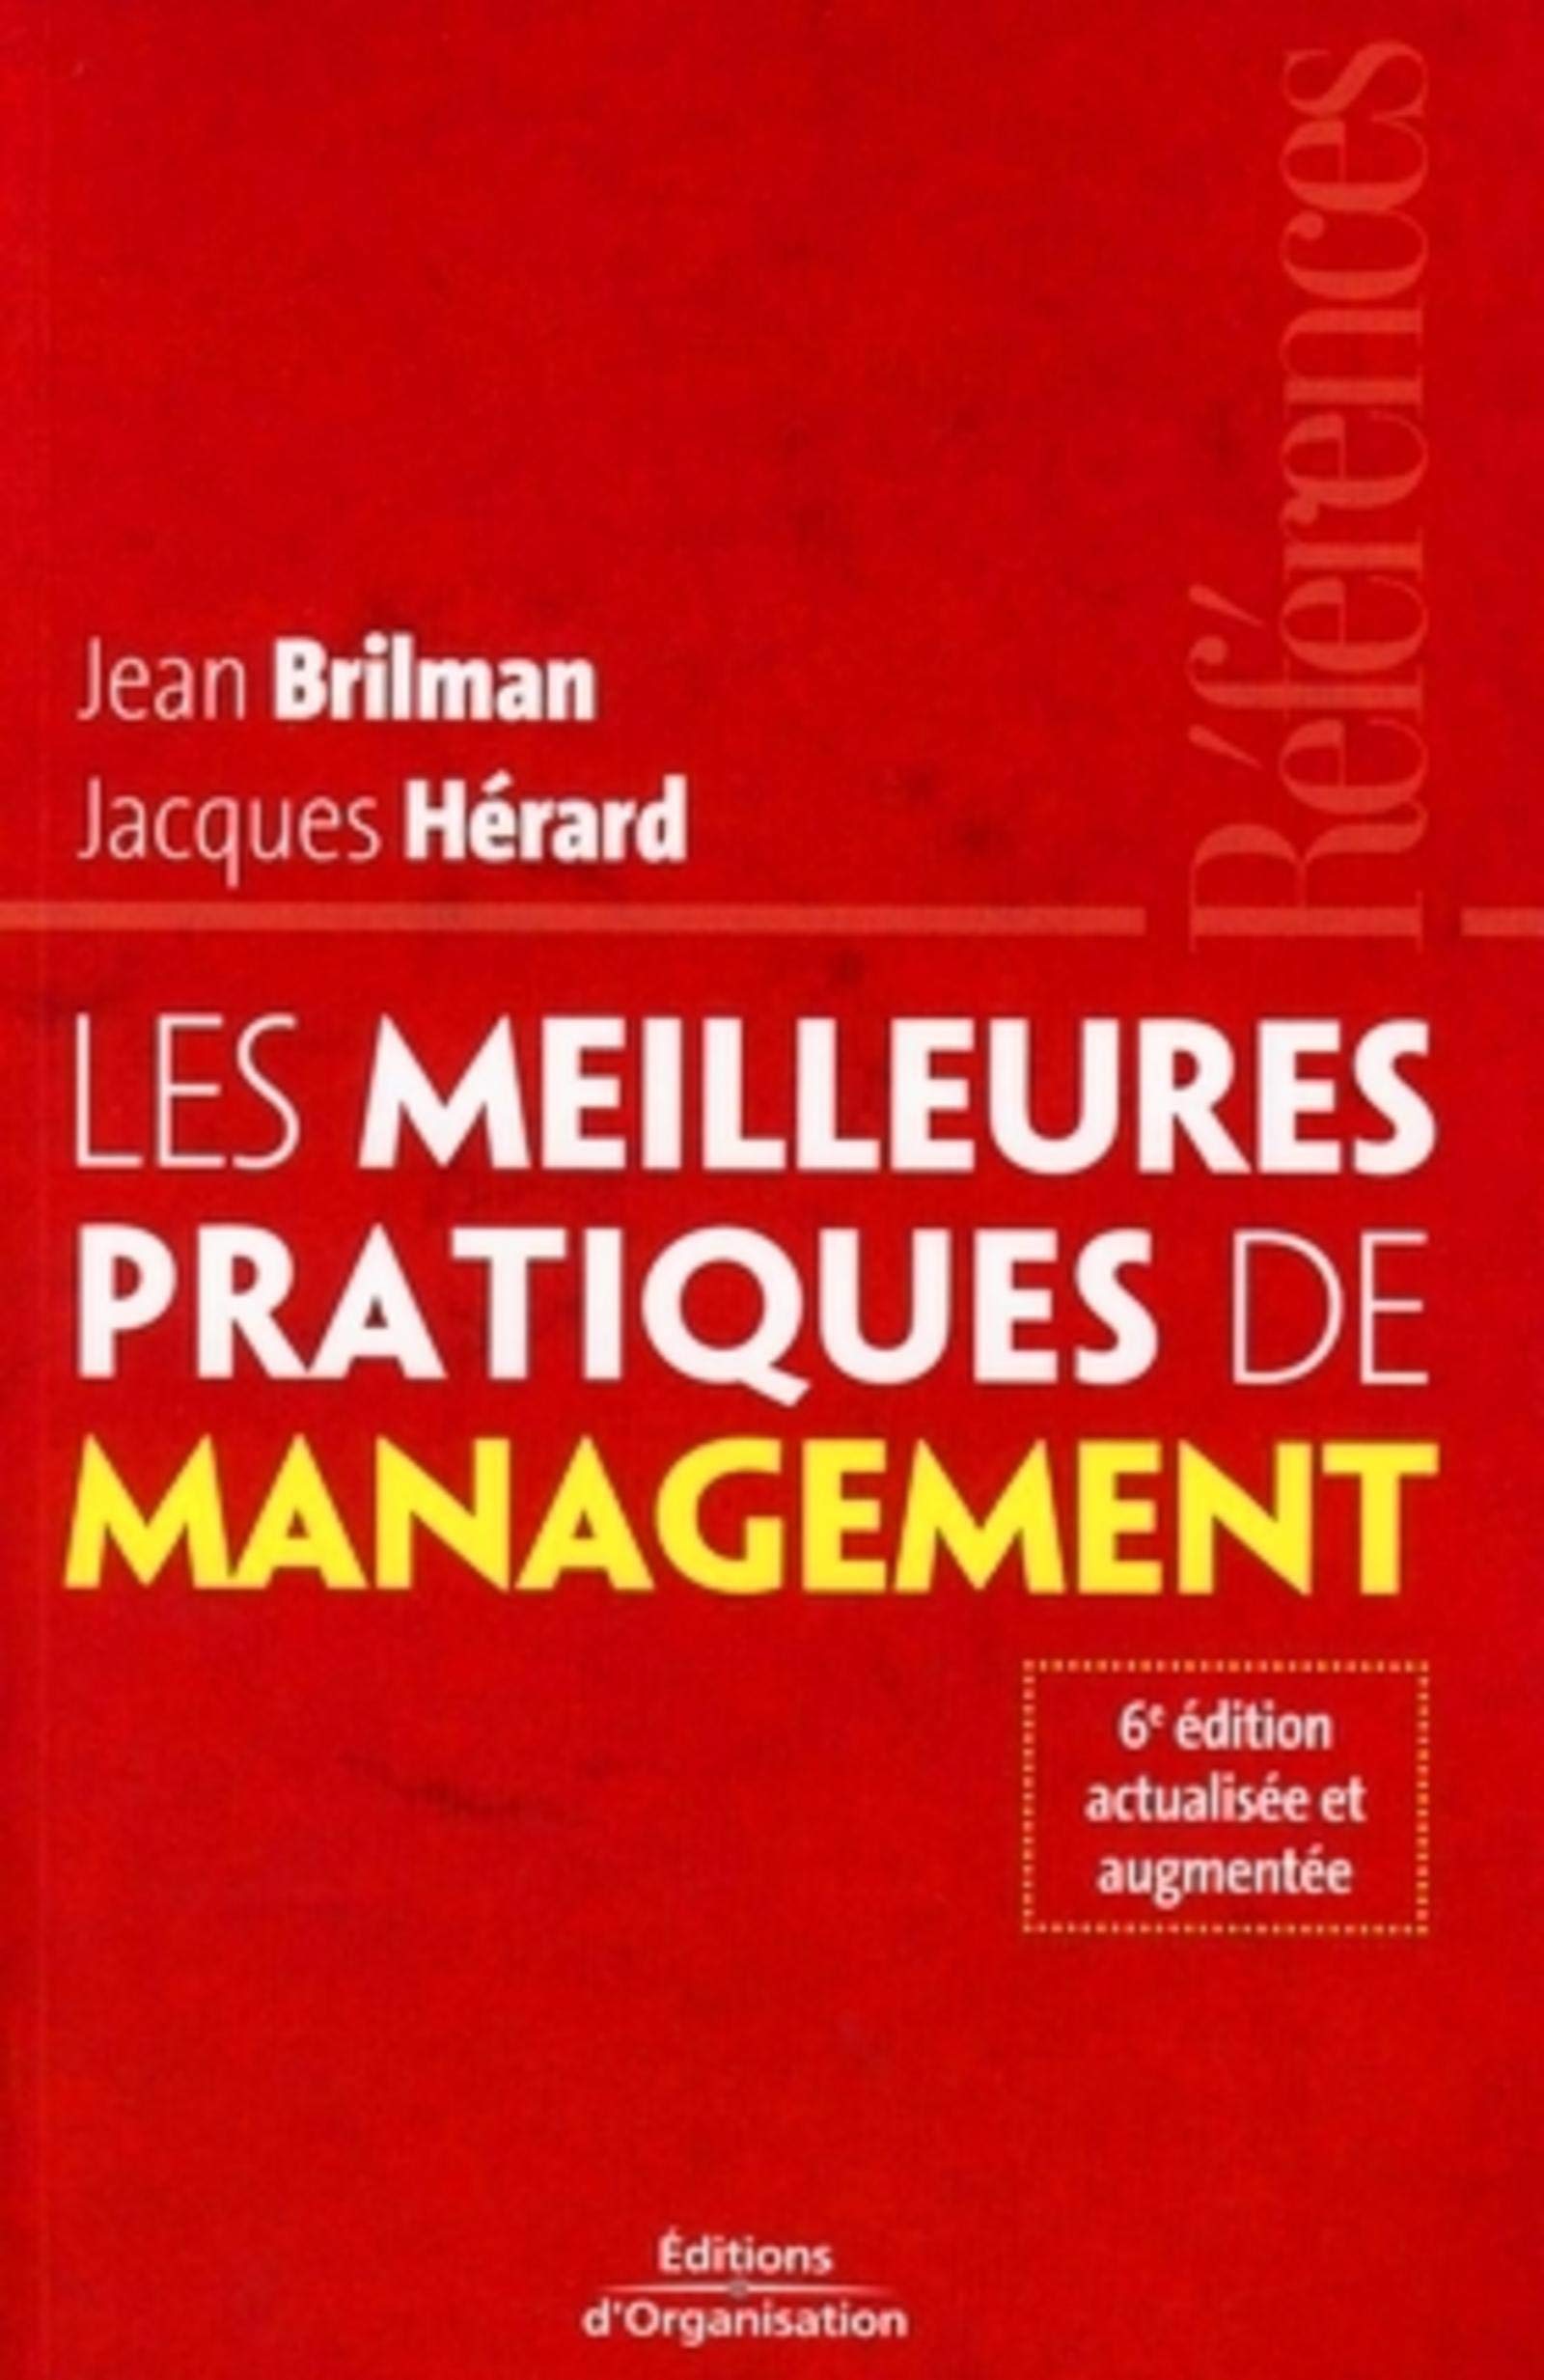 Les meilleurs pratiques de management dans le nouveau contexte mondial(6e édition) - Jean Brilman